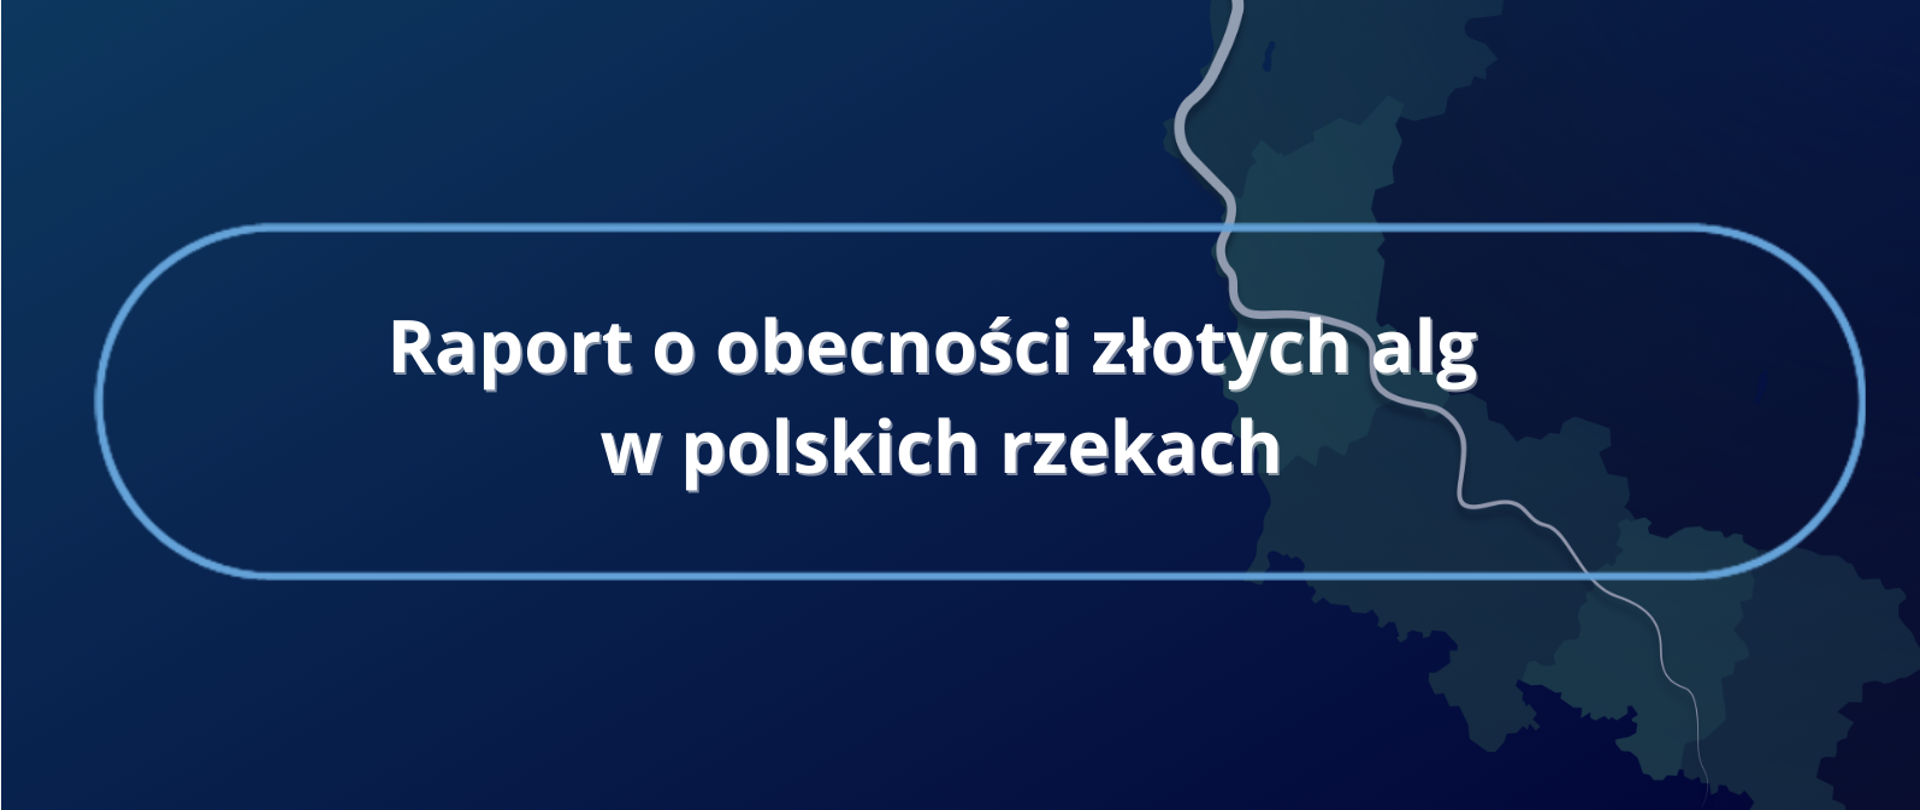 Raport o obecności złotych alg w polskich rzekach